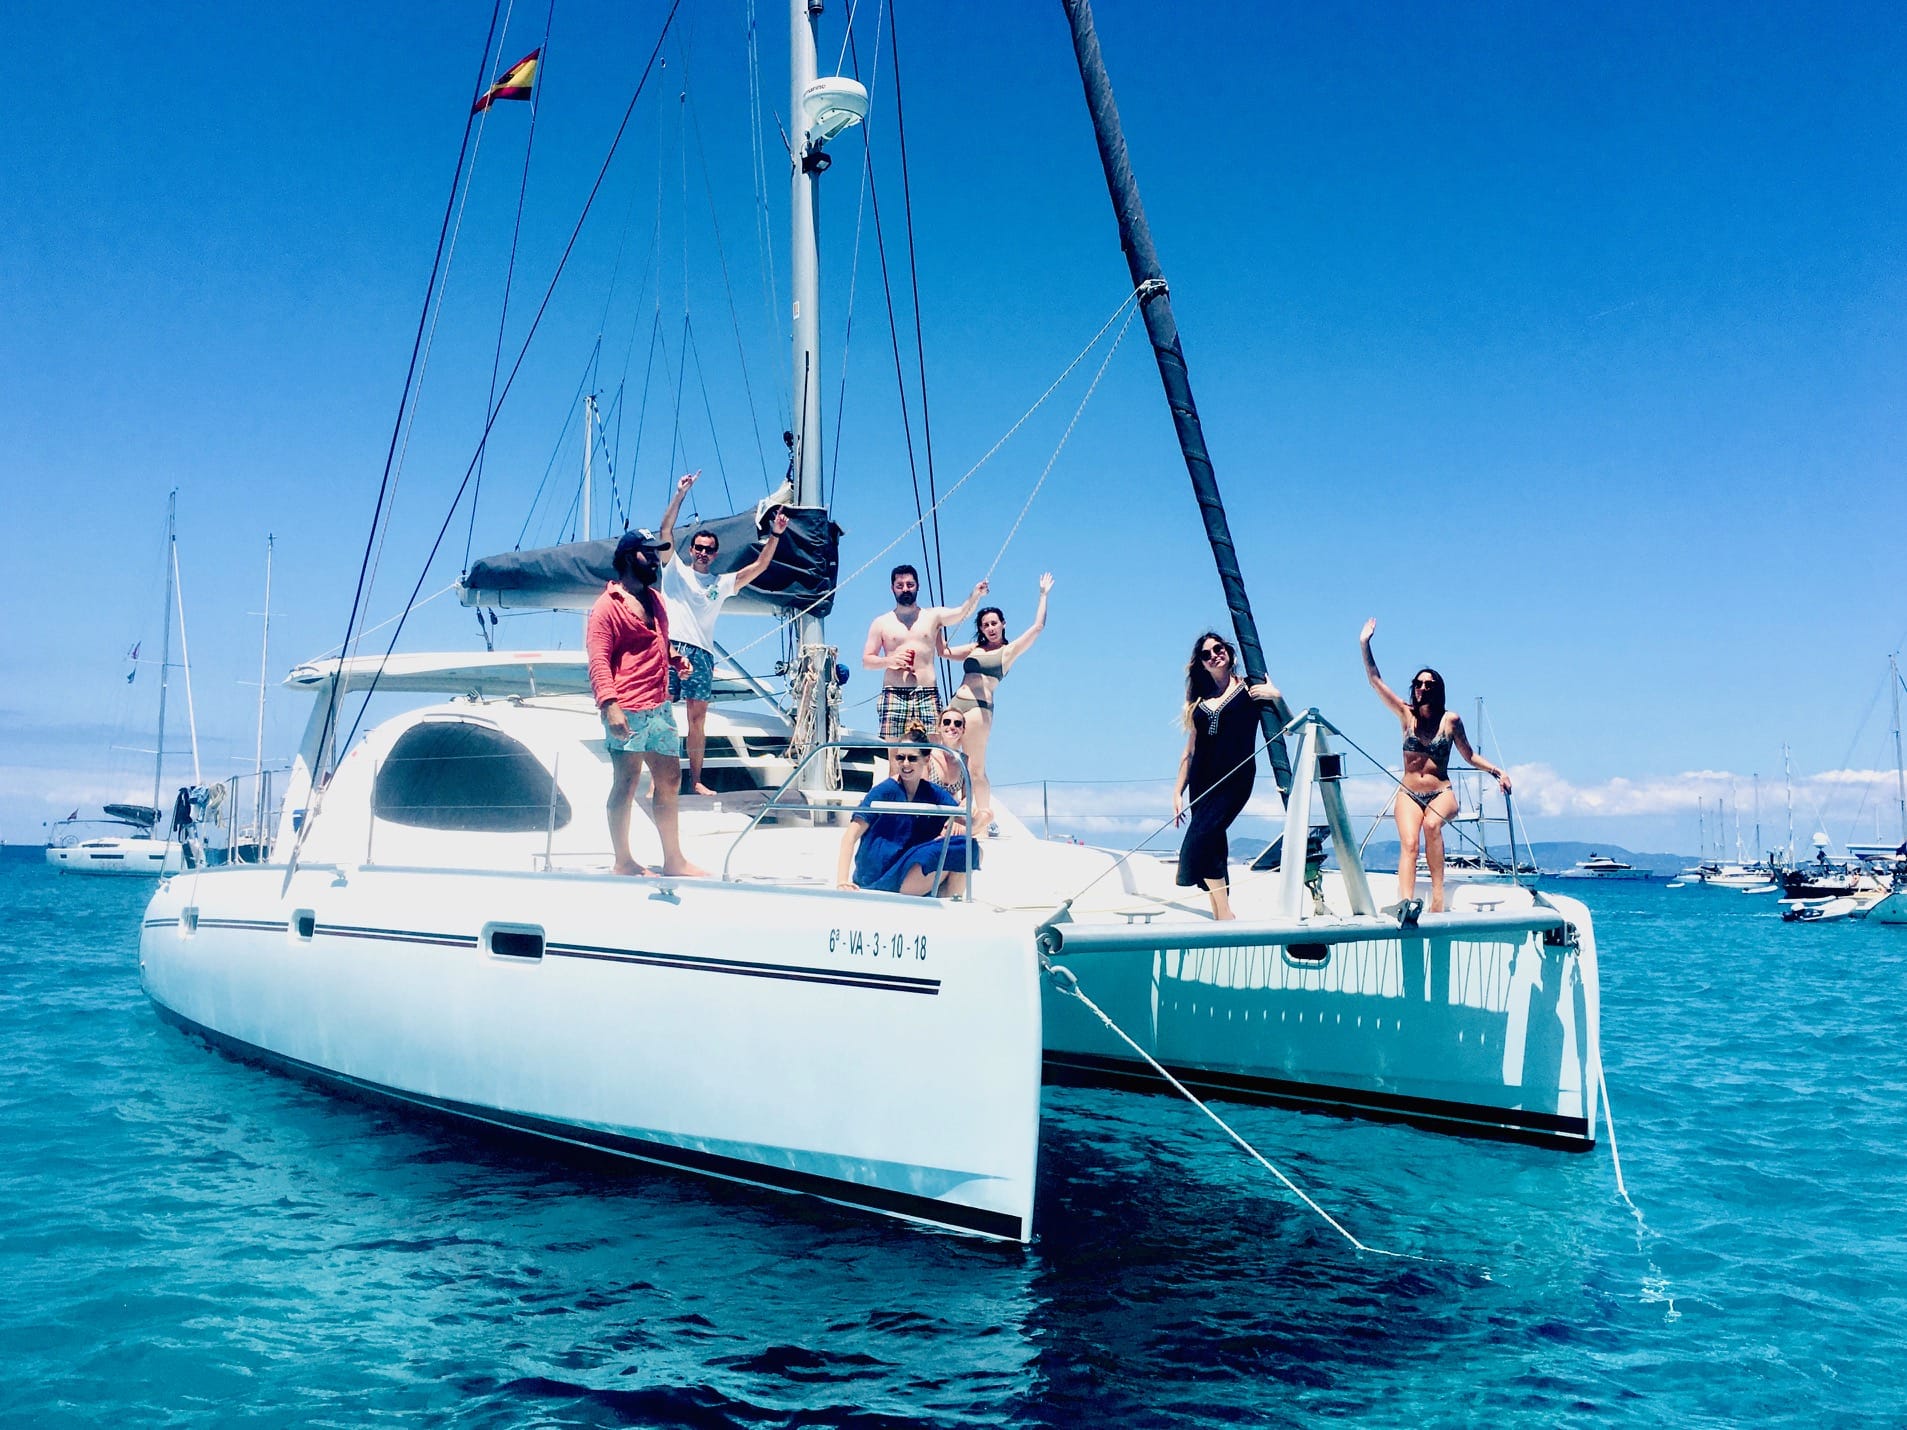 Catamaran Day charter Ibiza, people smiling on Board